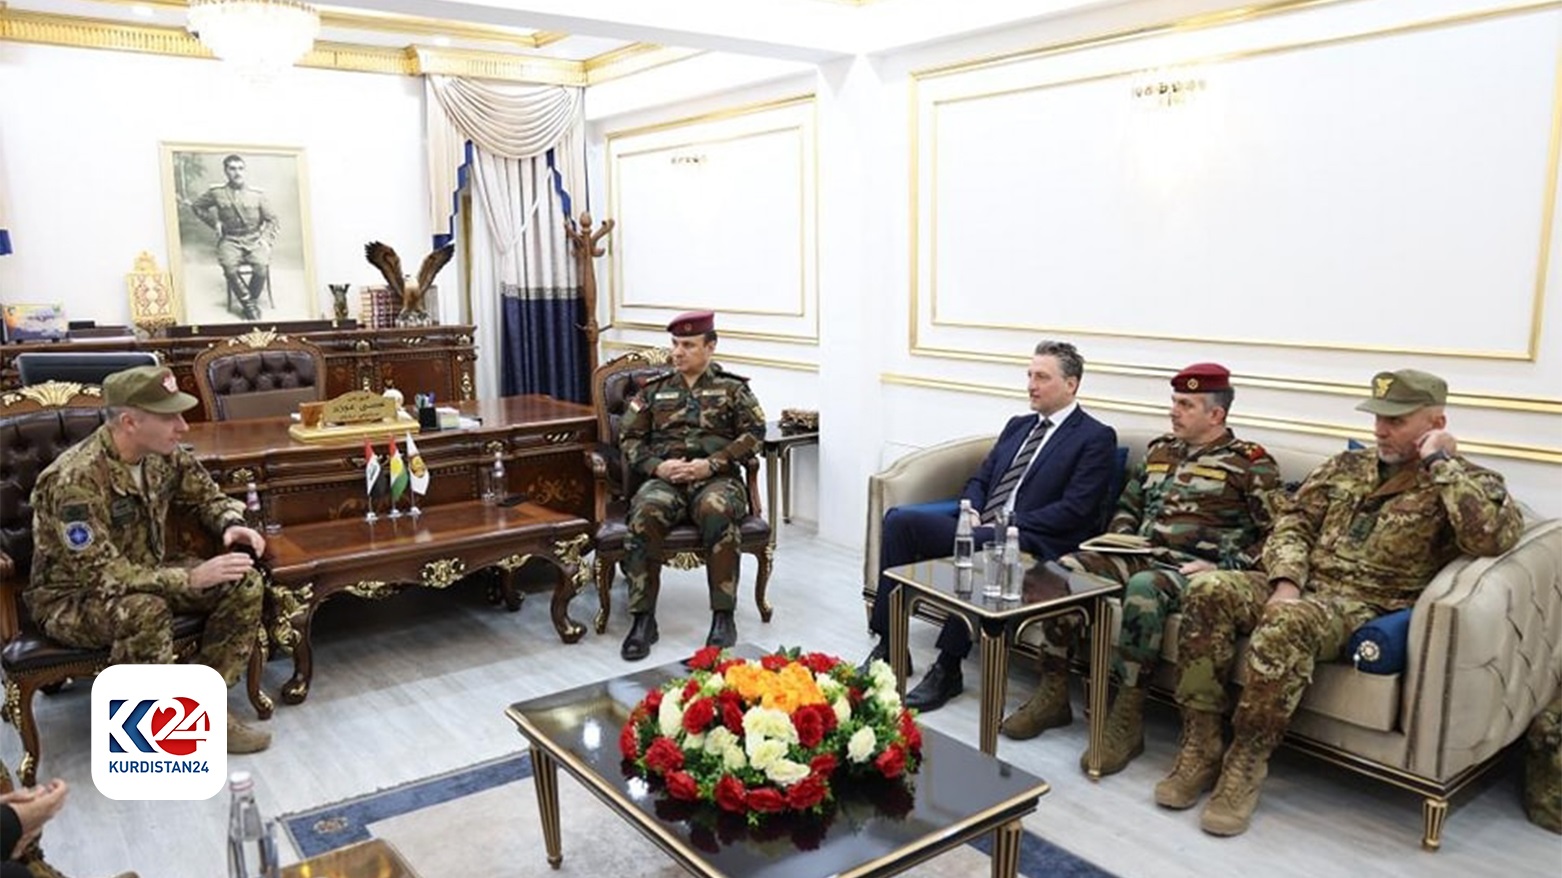 نشست فرماندهان وزارت امور پیشمرگ اقلیم کوردستان و فرمانده ناتو در عراق